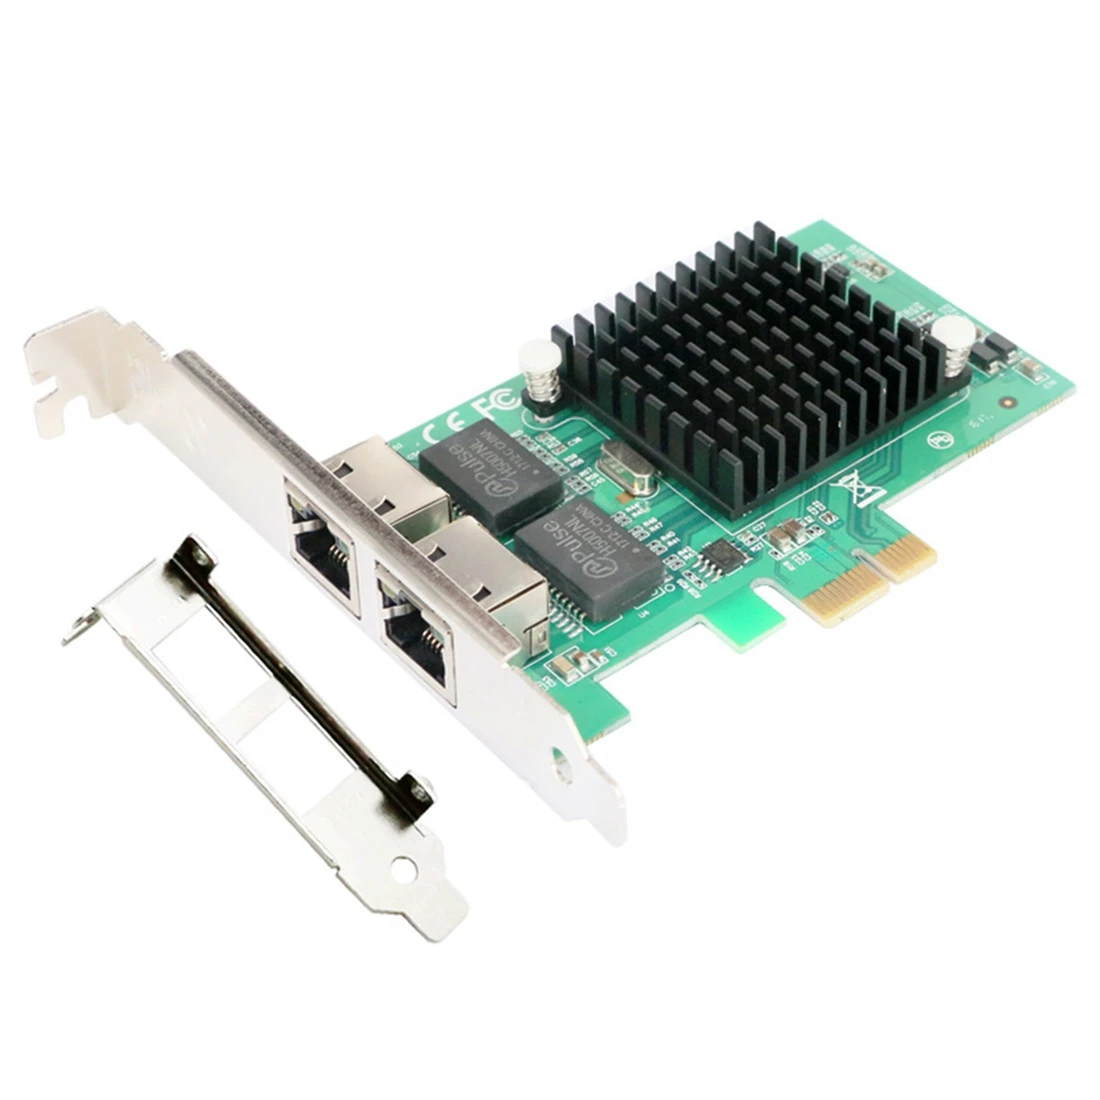 

2 порта PCIE X1 1000M PCIe Gigabit Ethernet Dual Port s RJ45 Lan сетевая карта чип для Intel 82576EB сеть (2 порта)